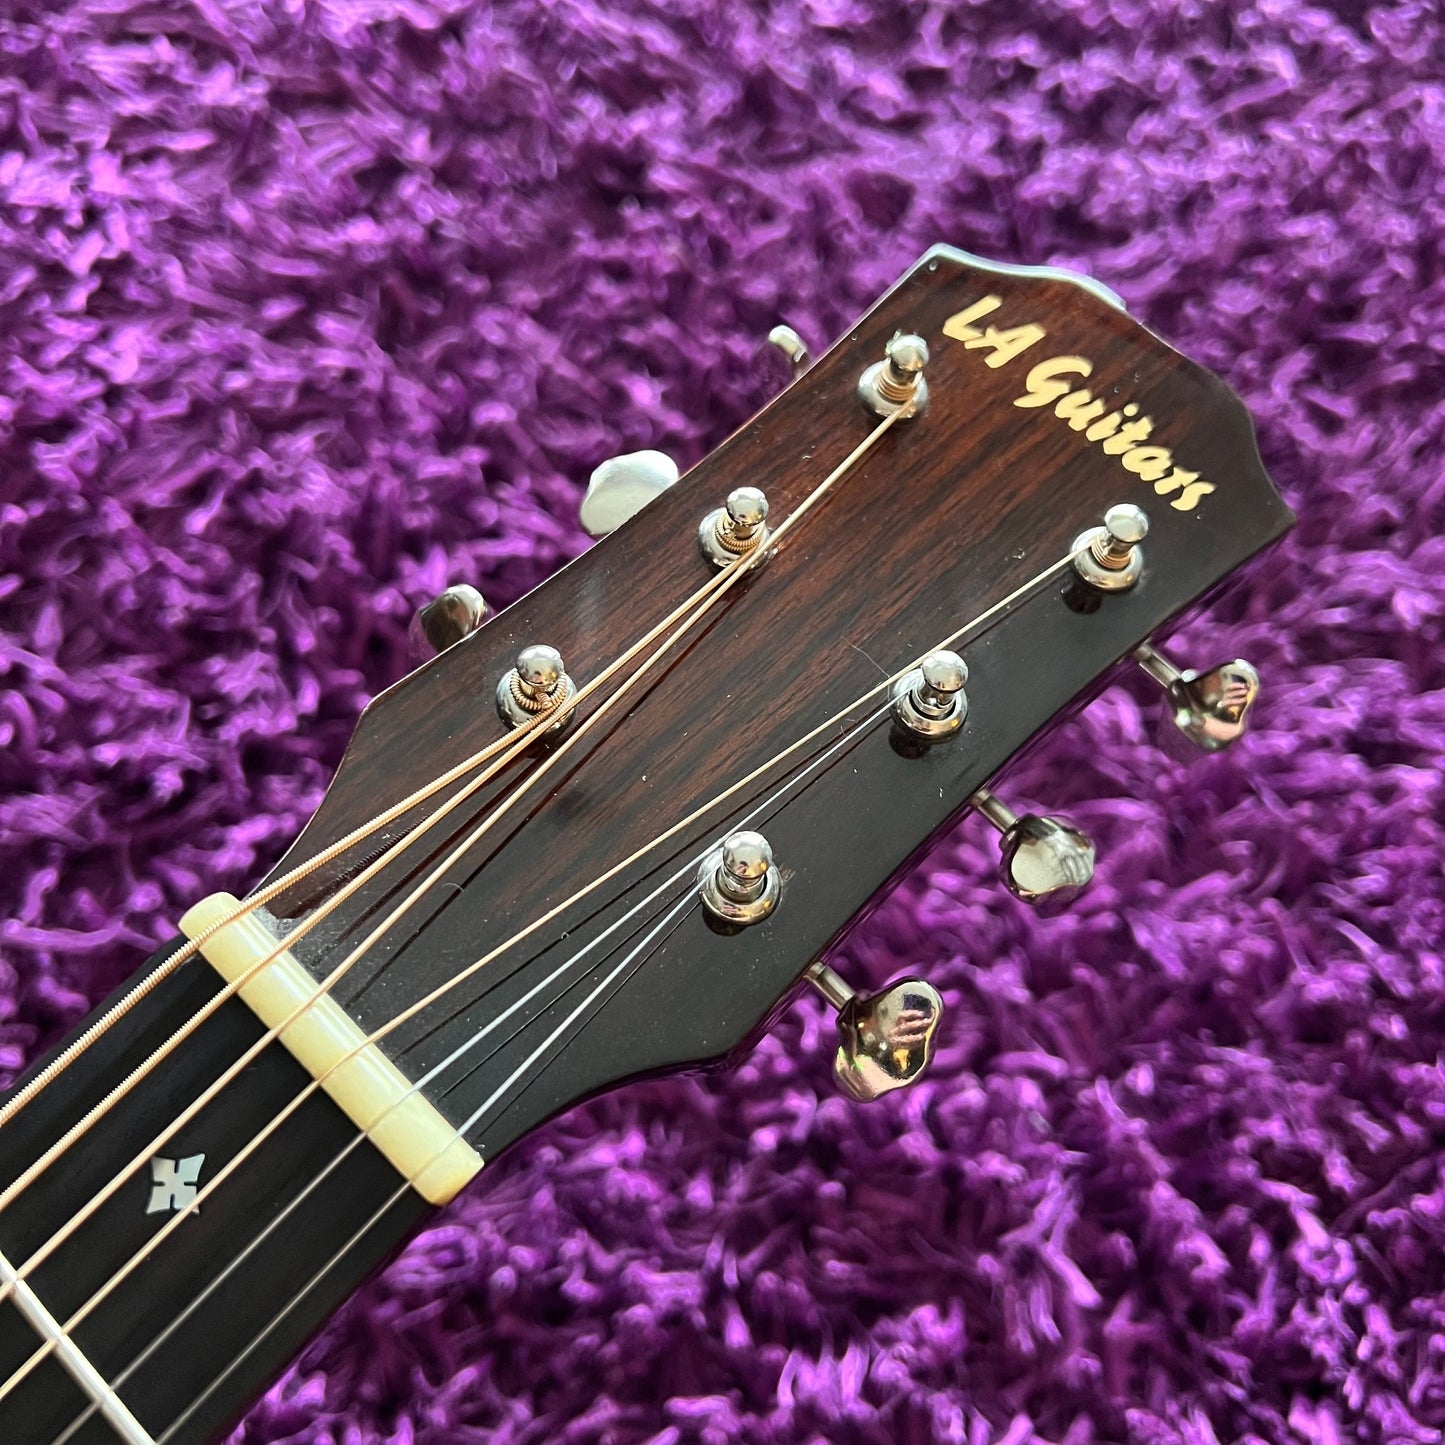 LA Guitars LAD001-CE Acoustic Guitar D-28 Style (w/ SKB Hard Case)